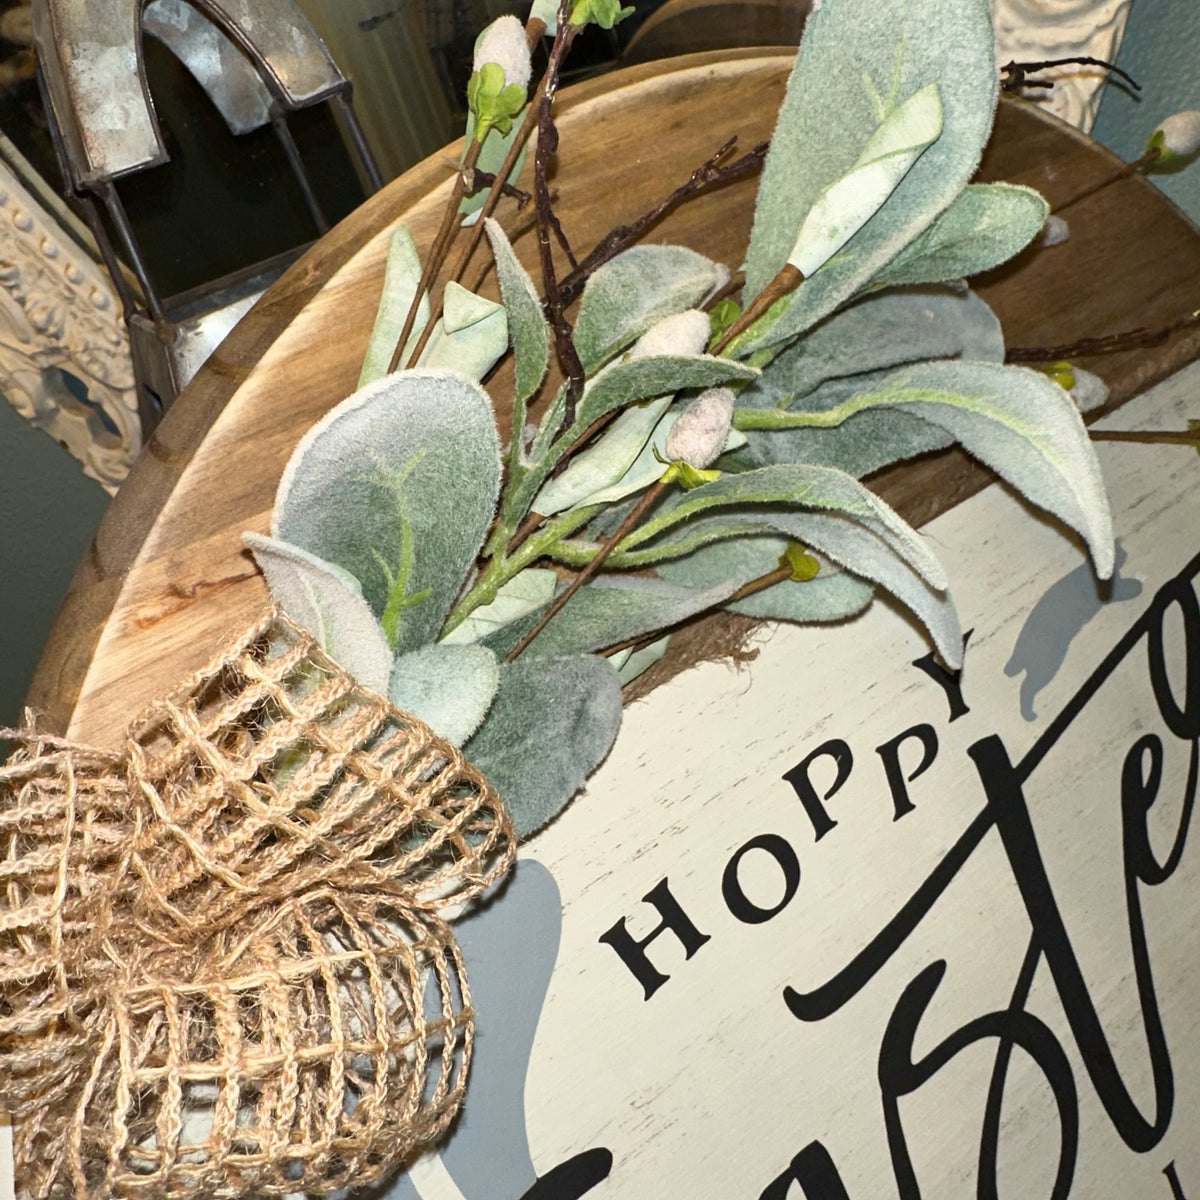 Hoppy Easter Blessings | 18&quot; Handmade Sign